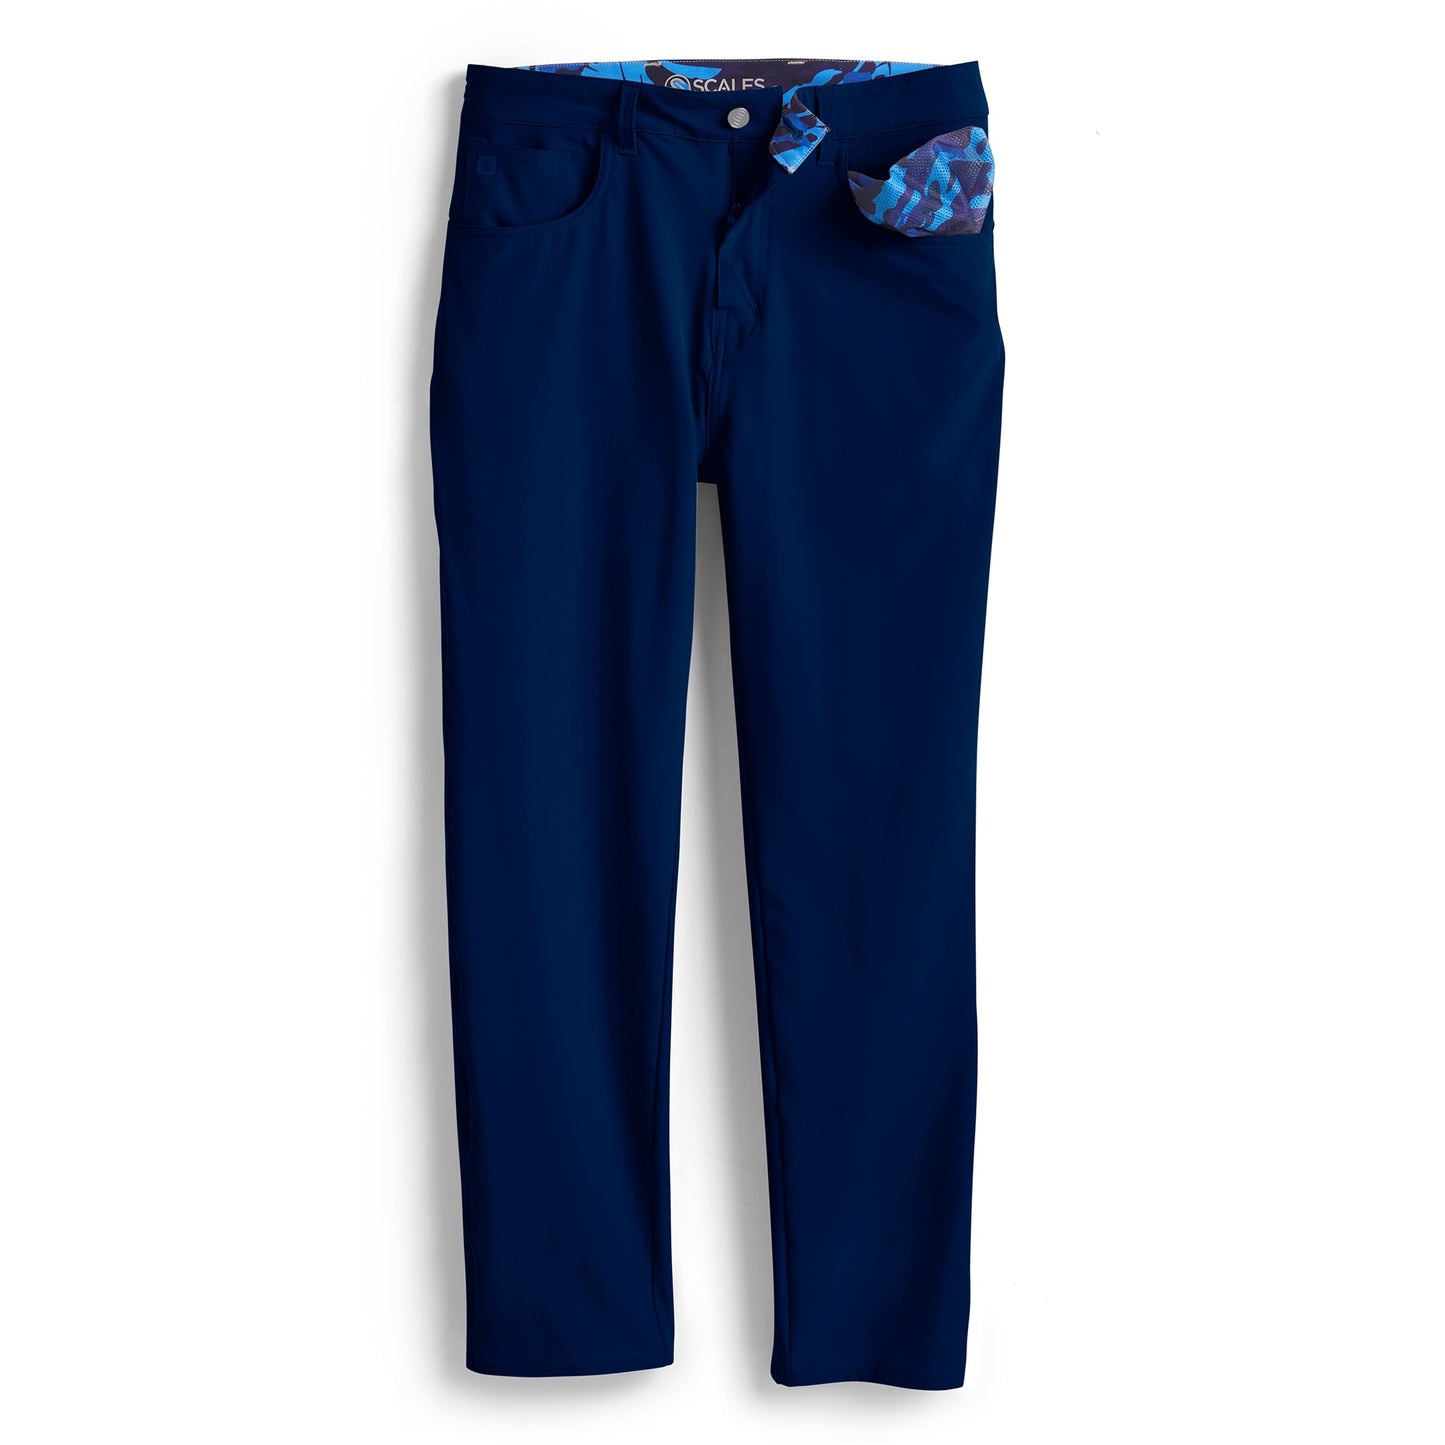 All Tides Pants - 5 Pockets (Core Blue Colors)